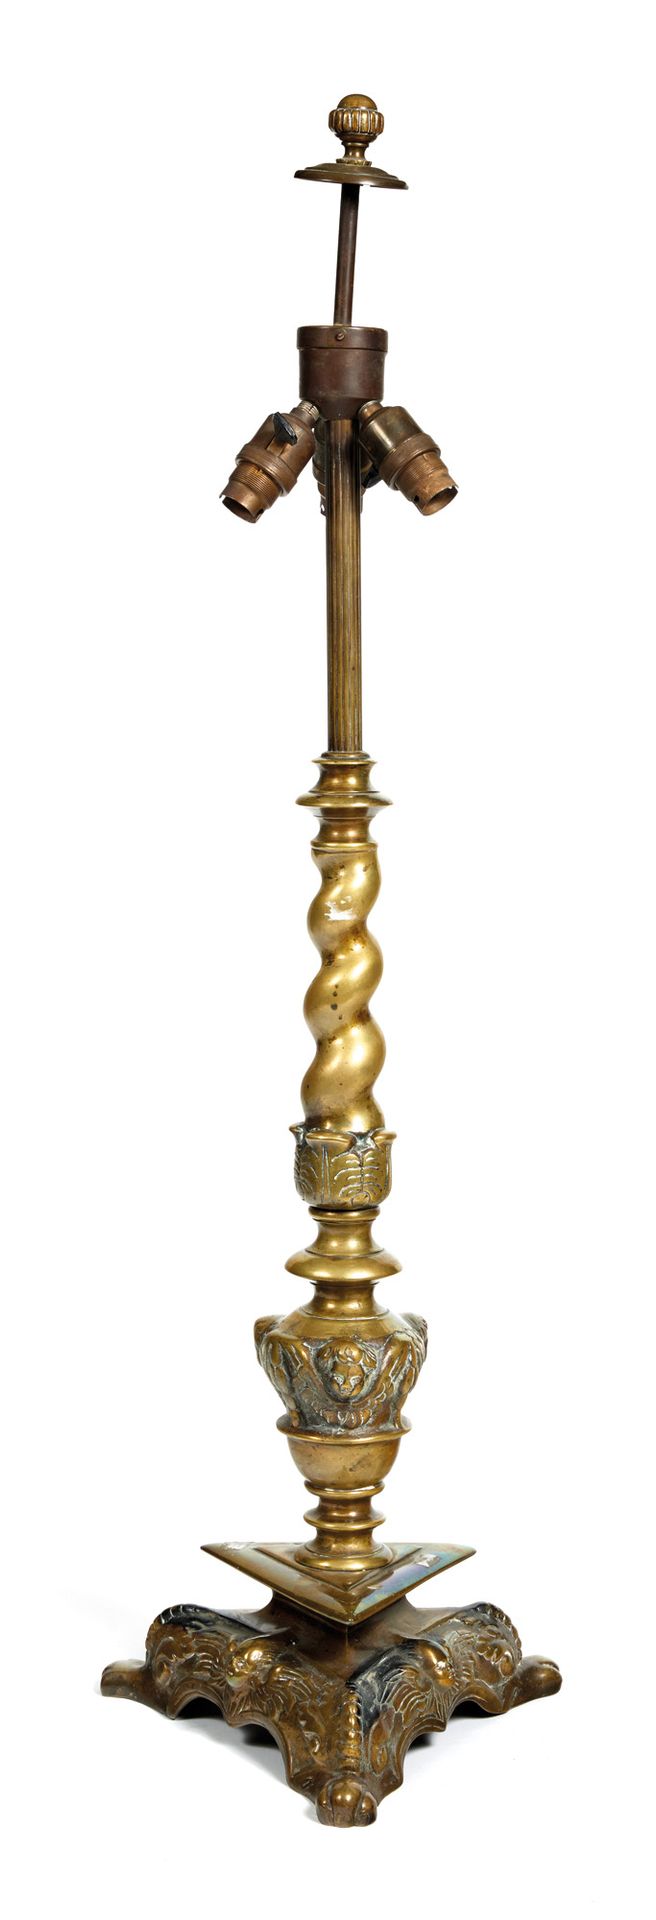 Pique-cierge Pique-cierge

aus vergoldeter Bronze, Torsosäule und dreieckiges Fu&hellip;